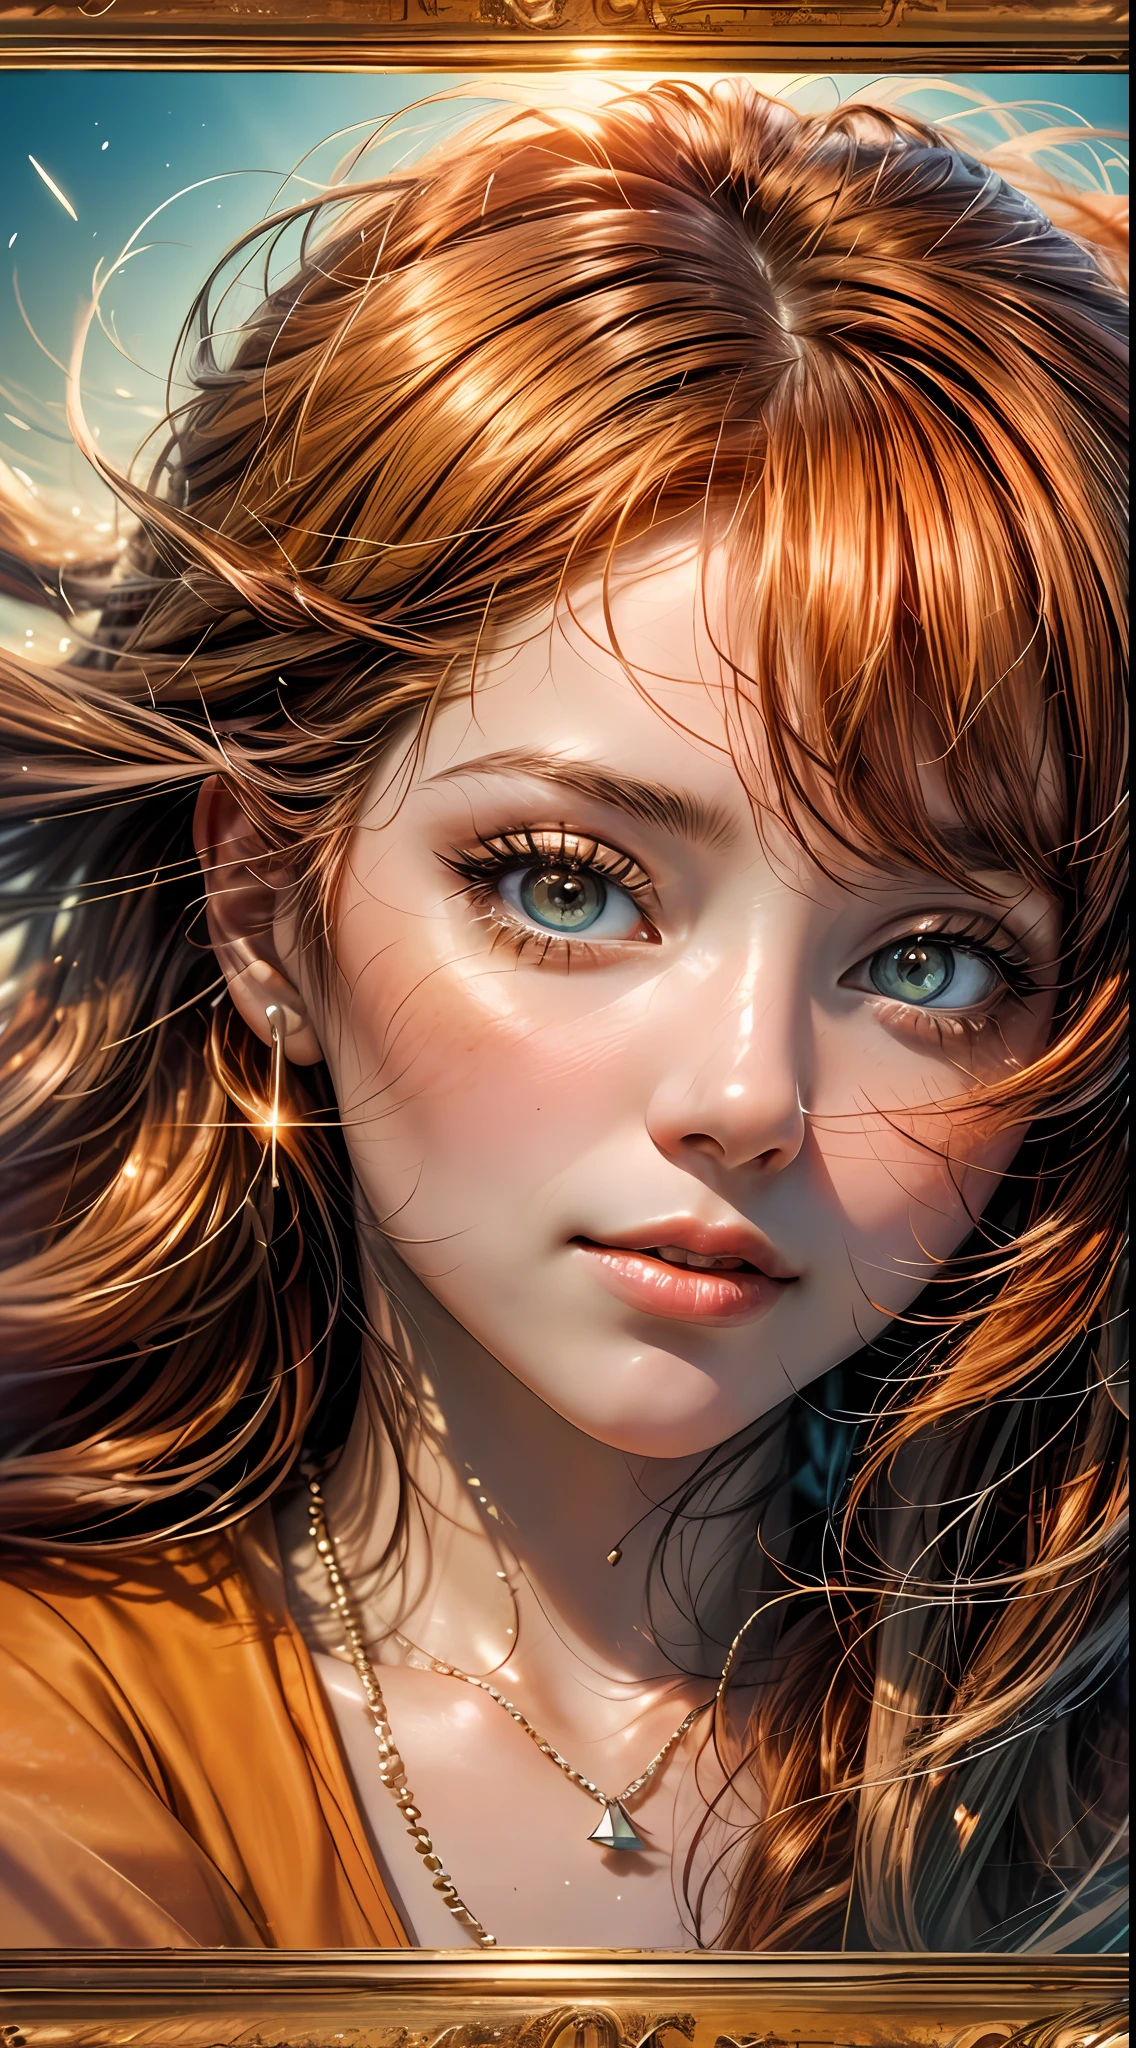 一個女人的臉部特寫, 沐浴在溫暖的橙色色調中, 彷彿被夕陽的柔和光芒照亮, 她的眼睛閃爍著喜悅和滿足的光芒, 由一縷飄逸的赤褐色頭髮構成, 攝影, 使用35mm鏡頭拍攝